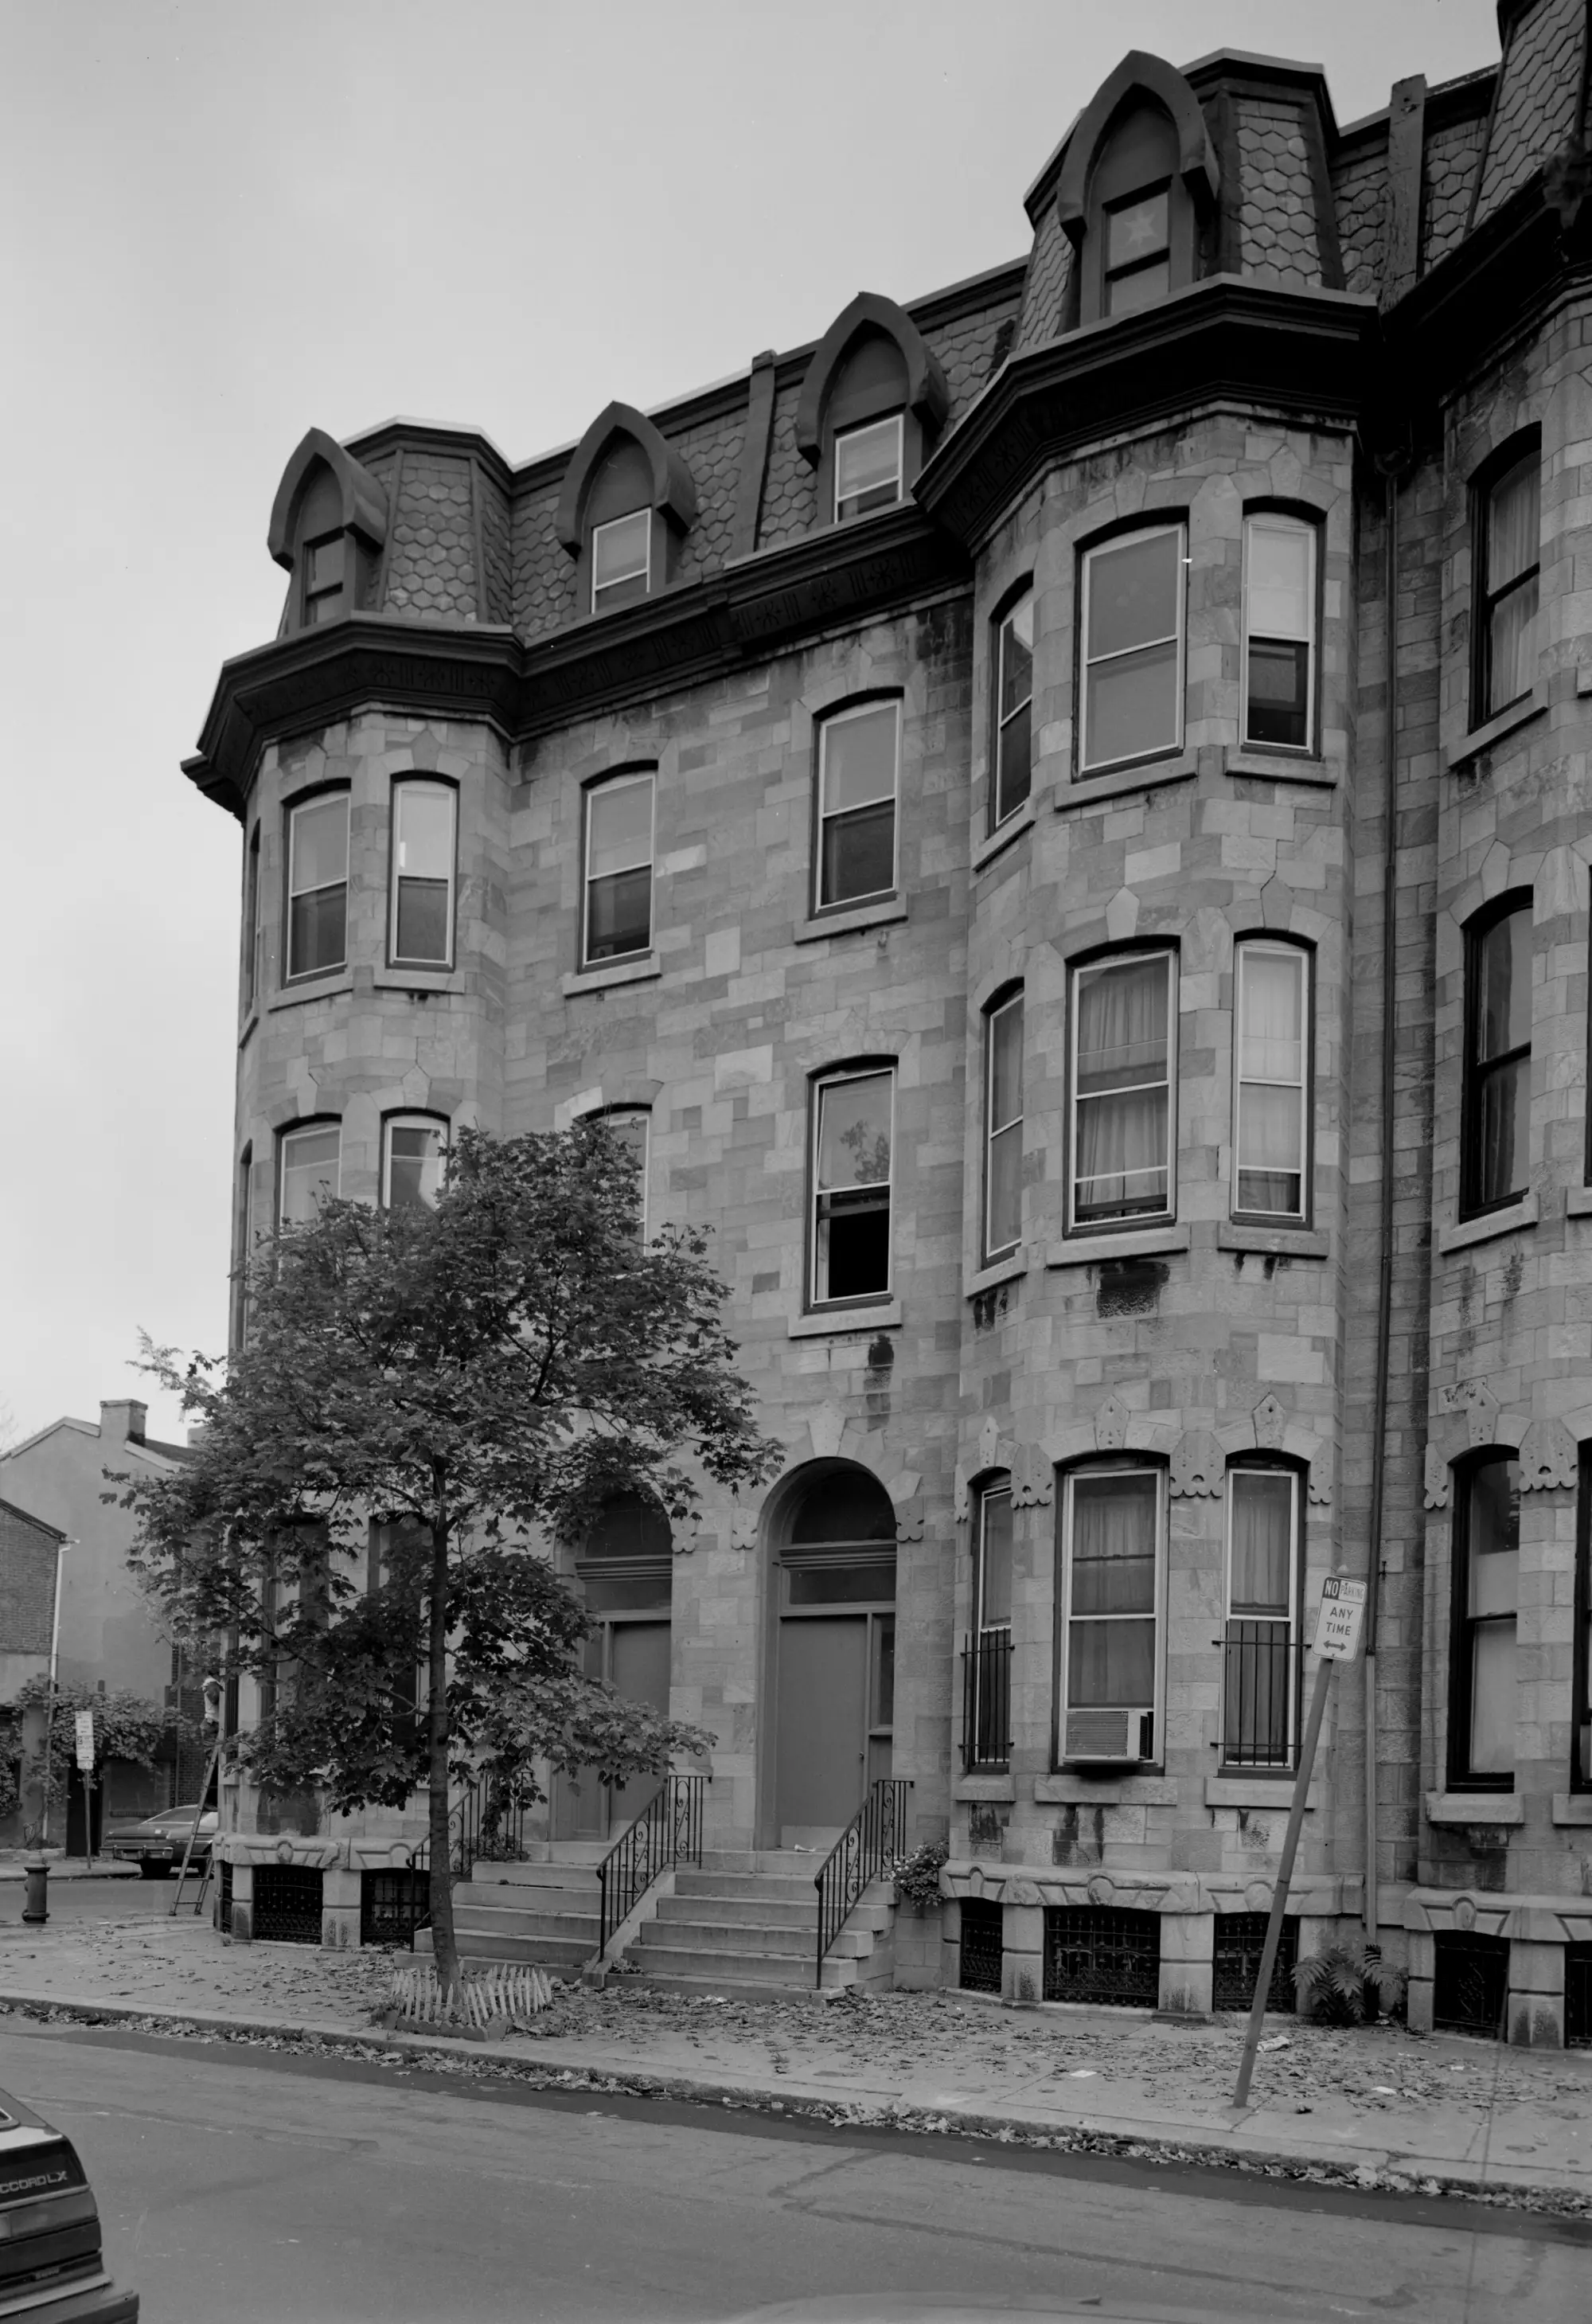 图为科普在派恩街的房子。1876年，科普从哈顿菲尔德搬到费城的派恩街（Pine Street） 2100号和2102号，他把这两座房子中的一座改建成了一座博物馆，在那里他收藏了越来越多的化石。